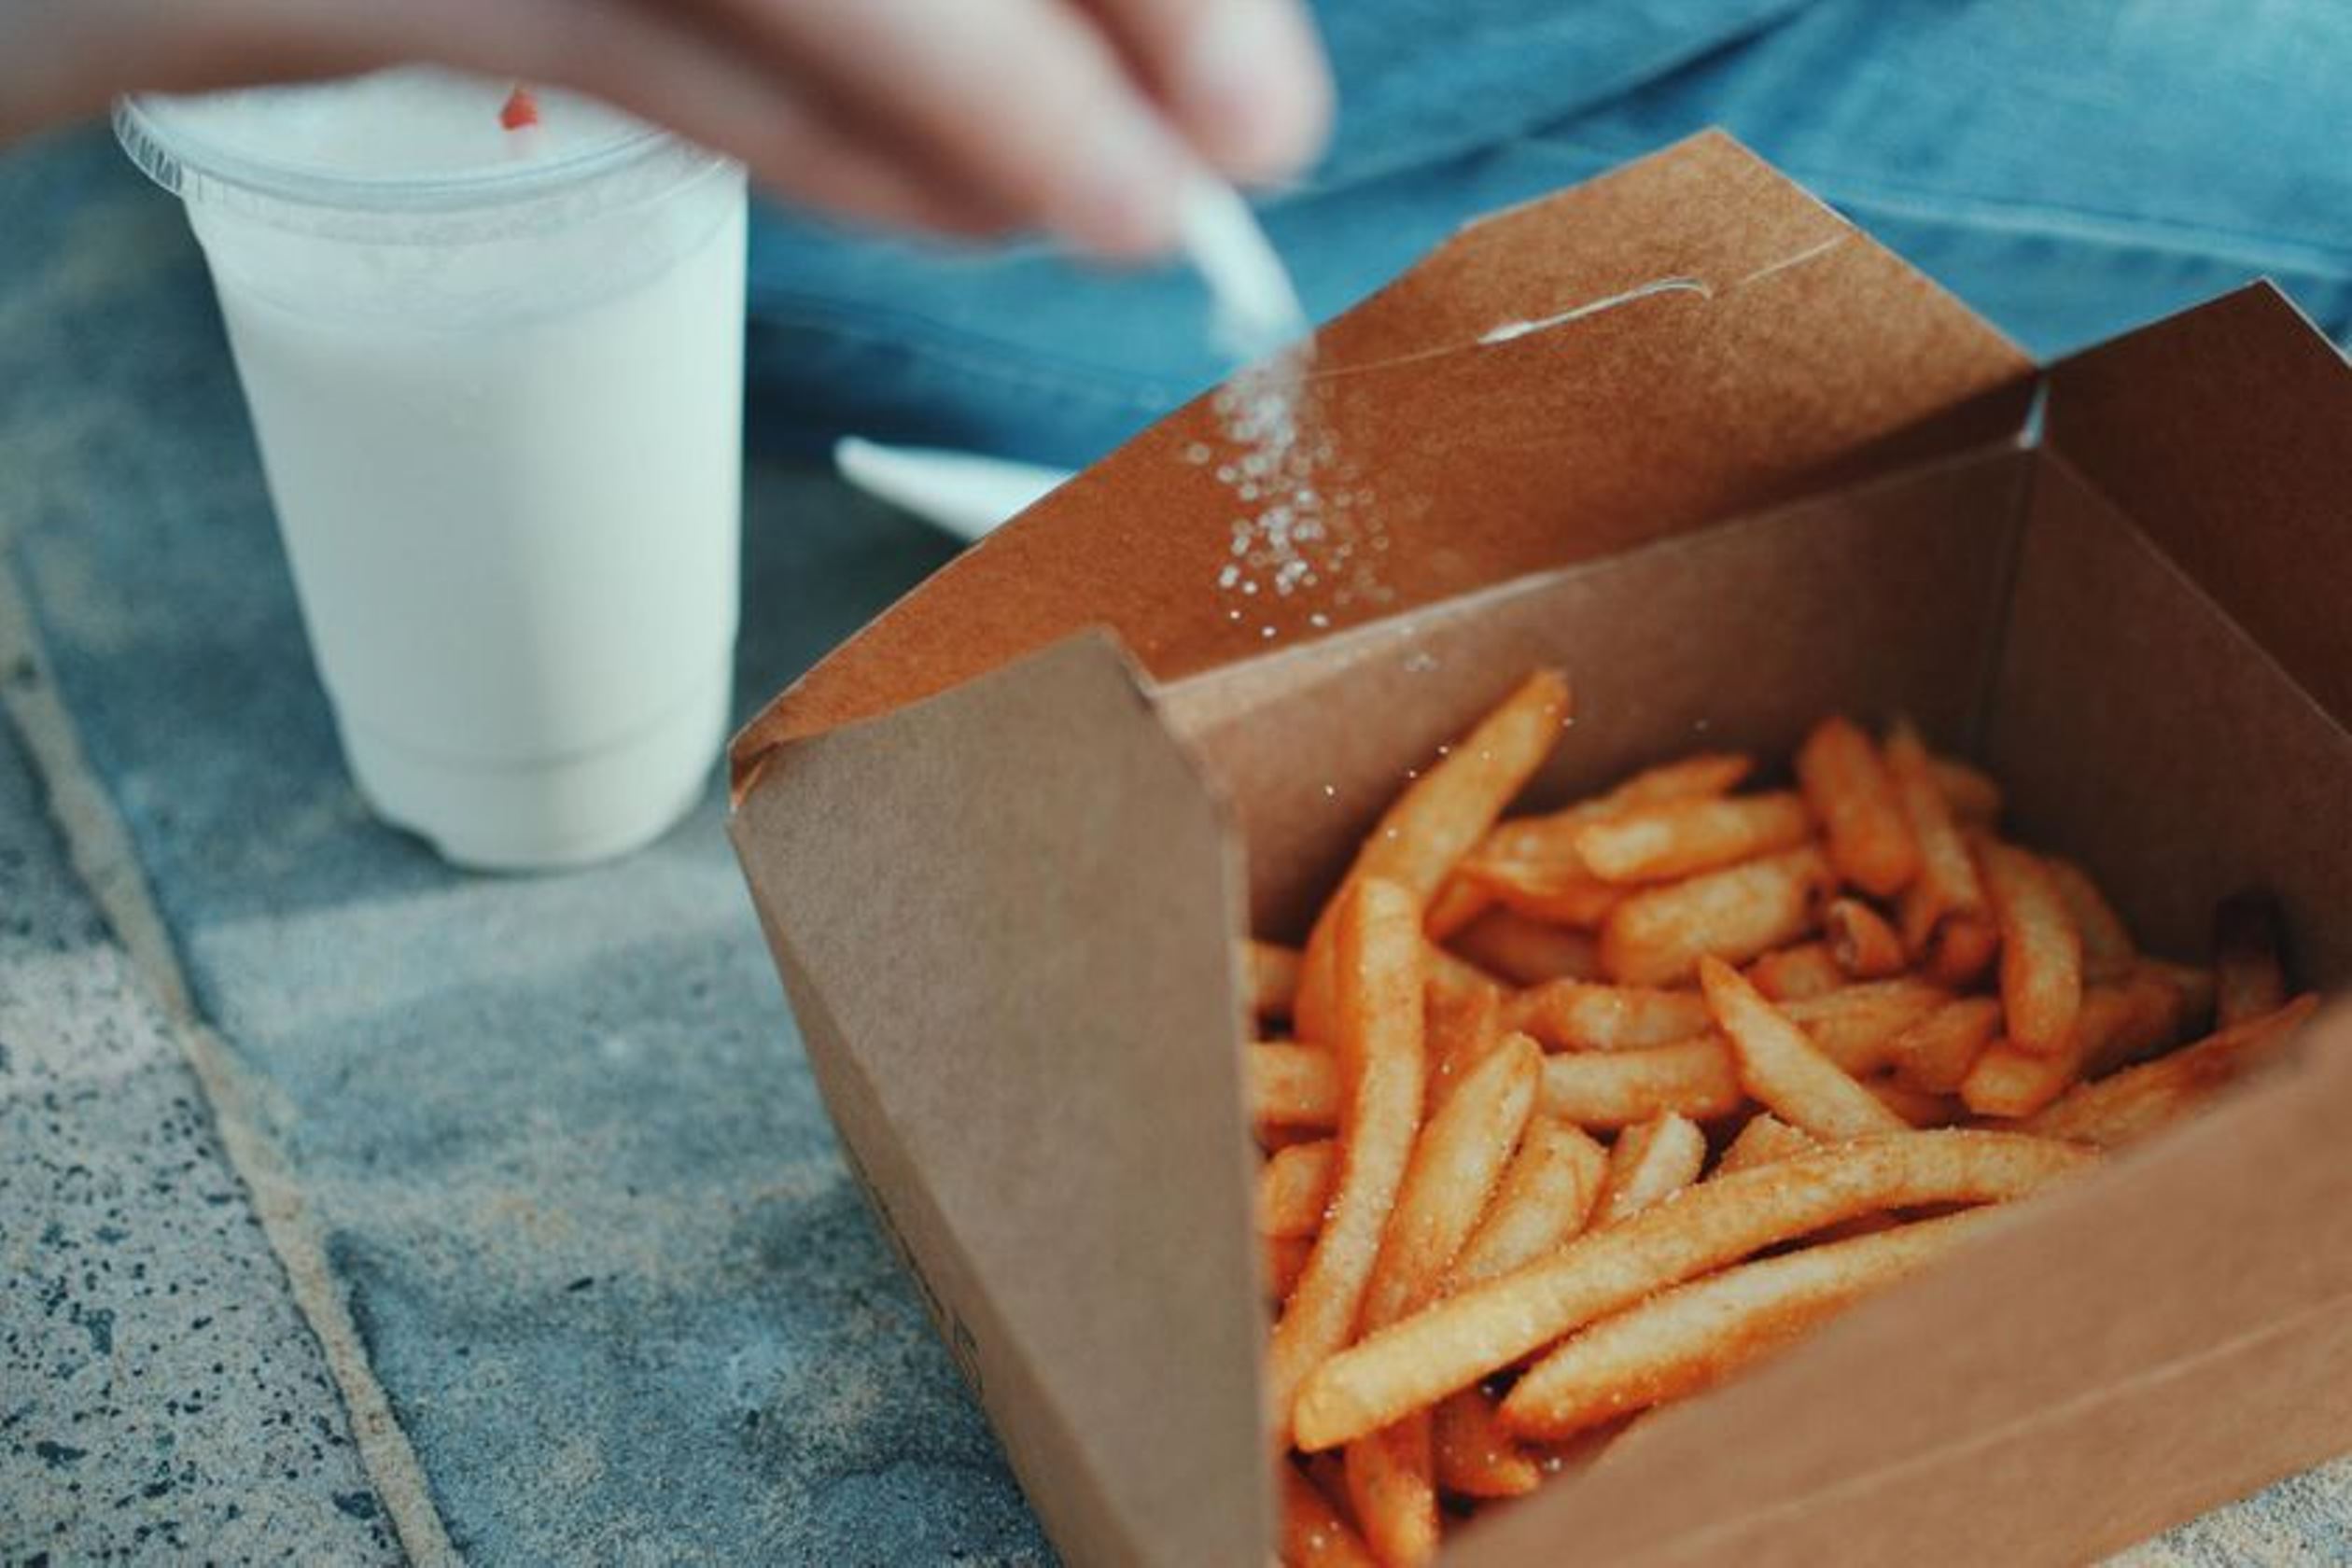  Tomar fritos aumenta el riesgo de enfermedad cardiaca grave